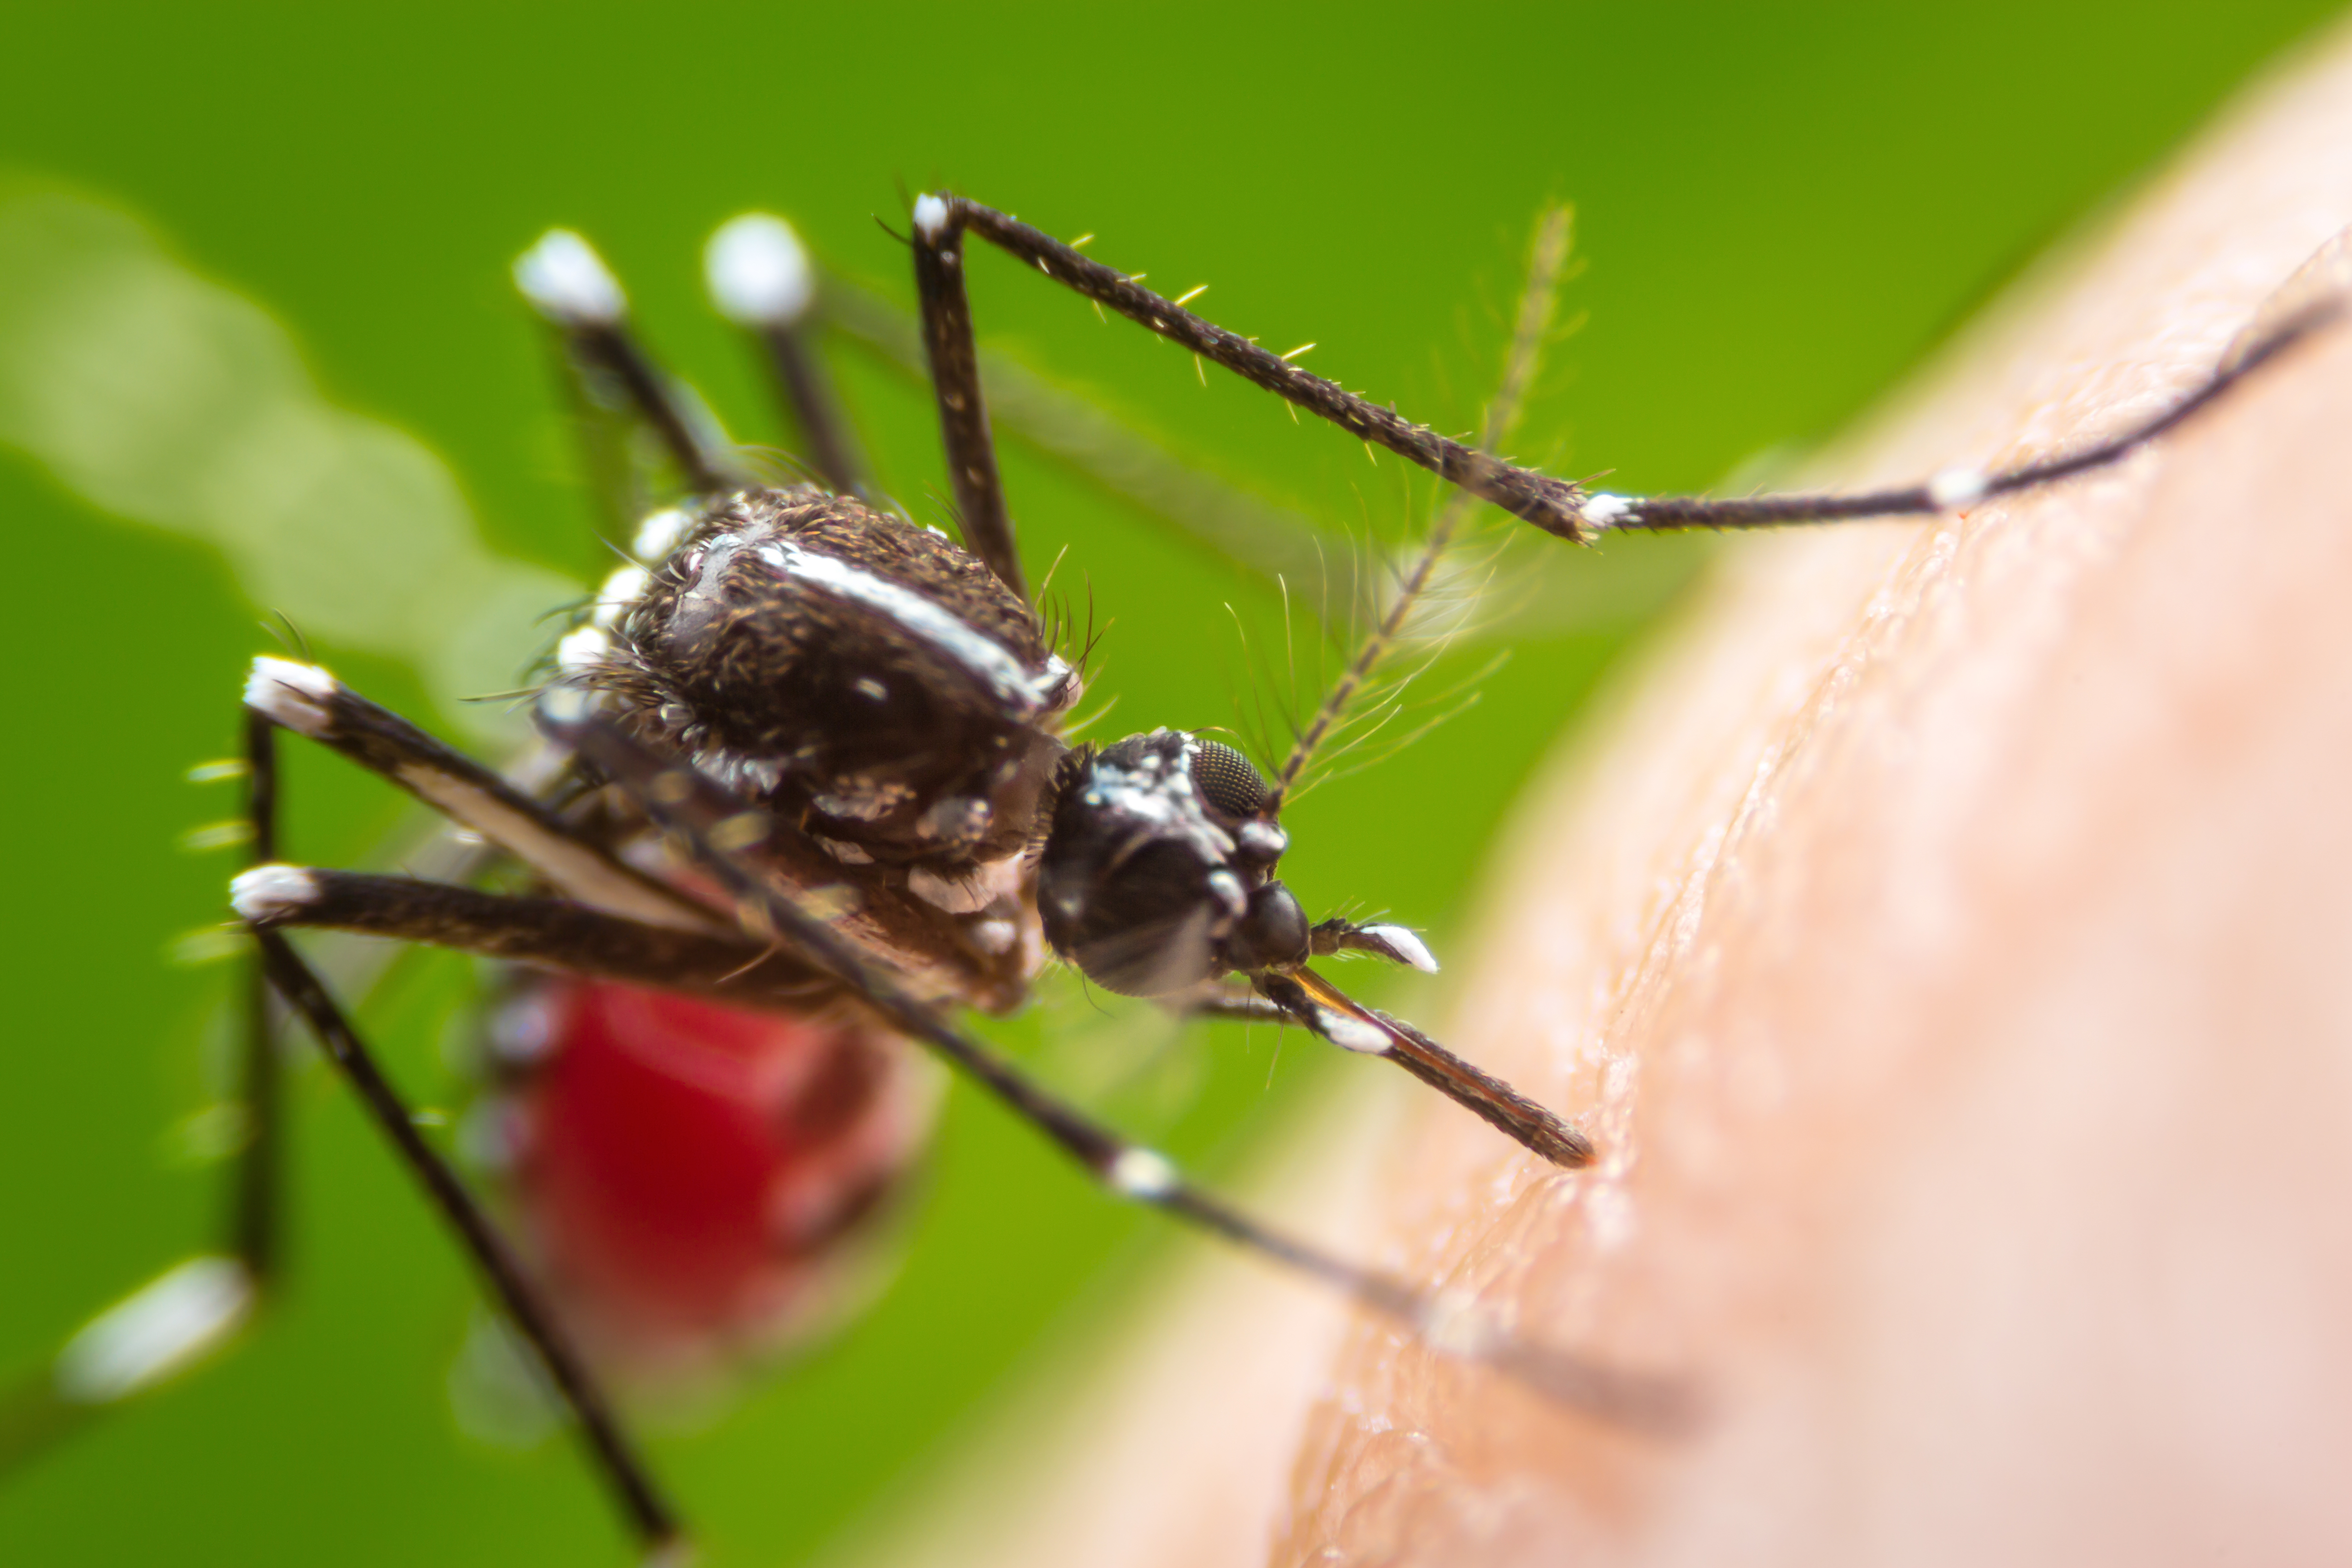     L'épidémie de dengue semble s'atténuer en Martinique 

